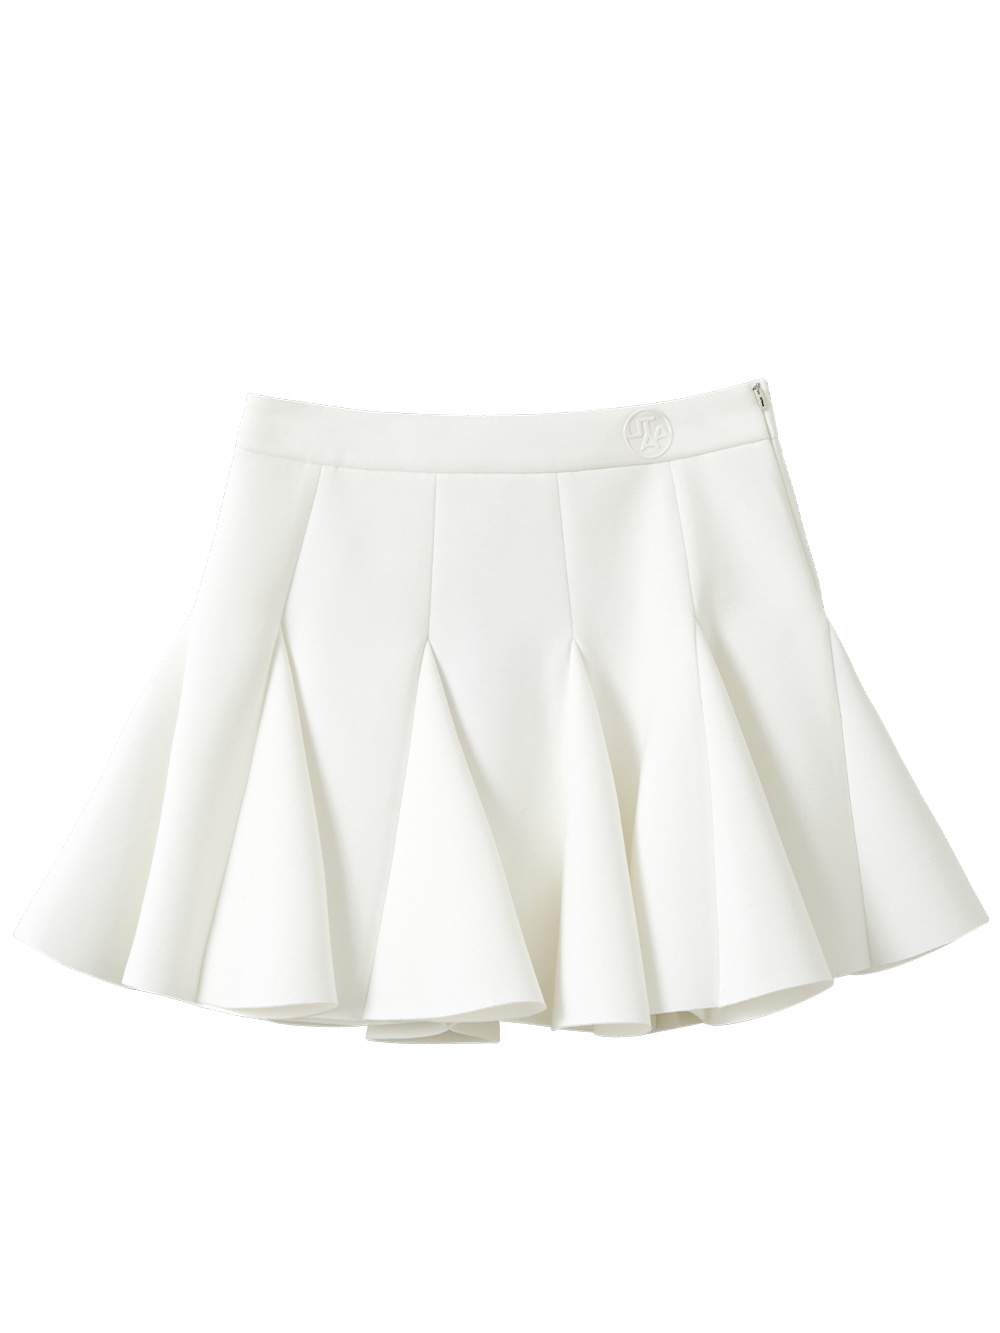 UTAA Bloom Flare Neoprene Skirt : White (UB3SKF733WH)